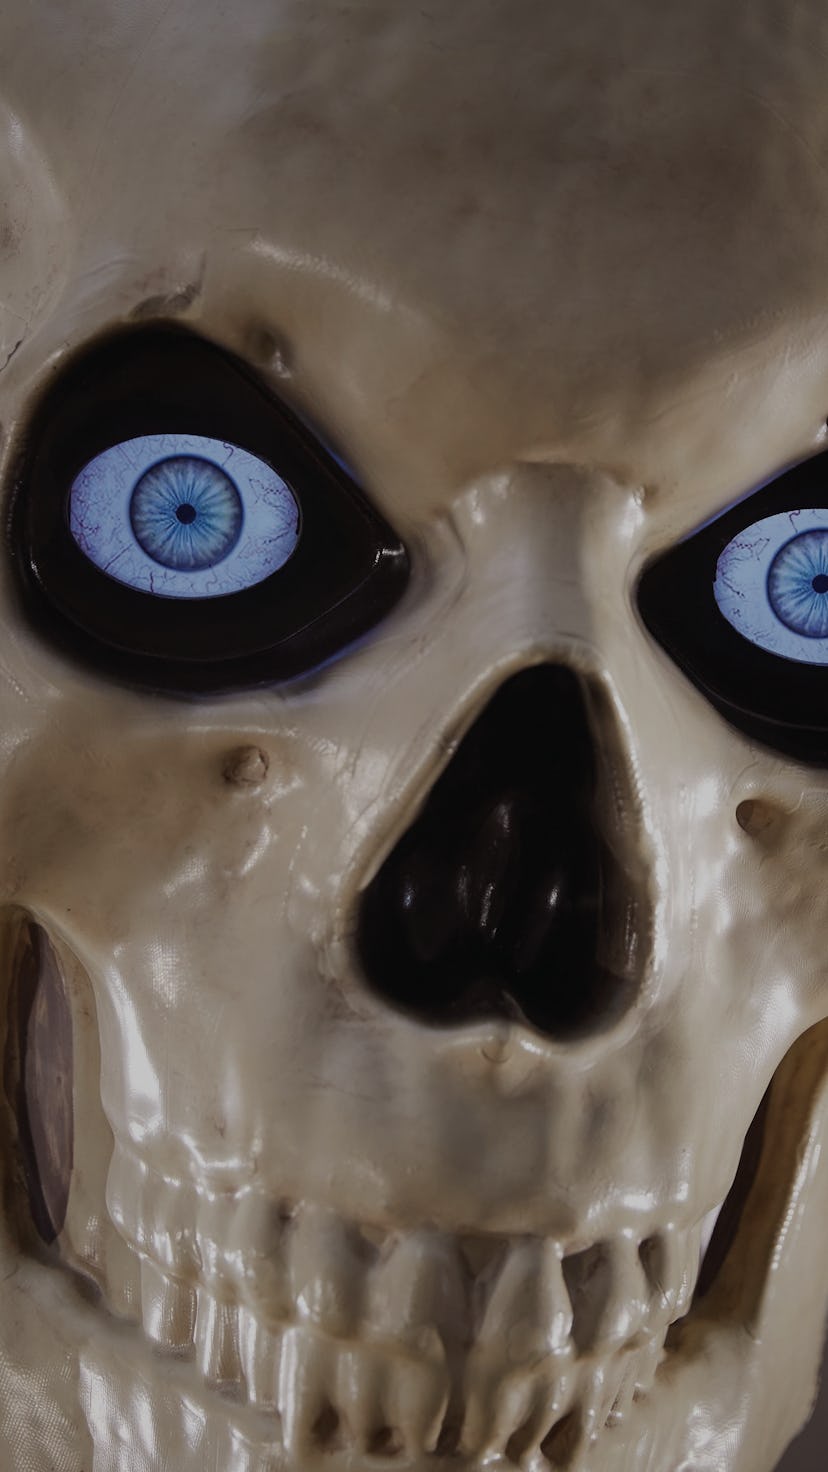 The Home Depot 12-foot skeleton's skull